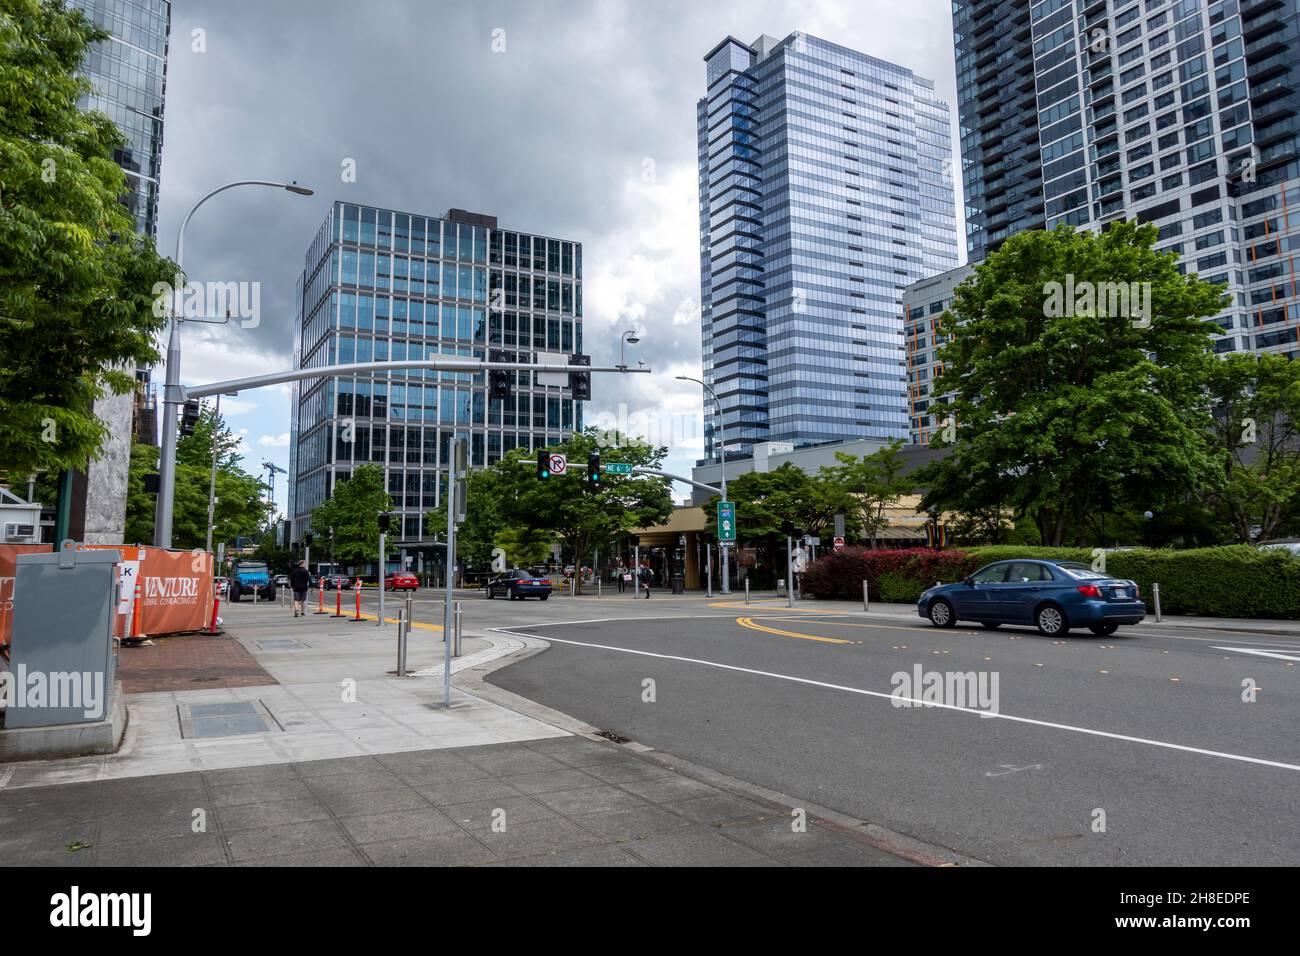 Bellevue, WA USA - ca. Juni 2021: Straßenansicht der Innenstadt von Bellevue Verkehr in der Nähe einer Baustelle an einem bewölkten Tag. Stockfoto